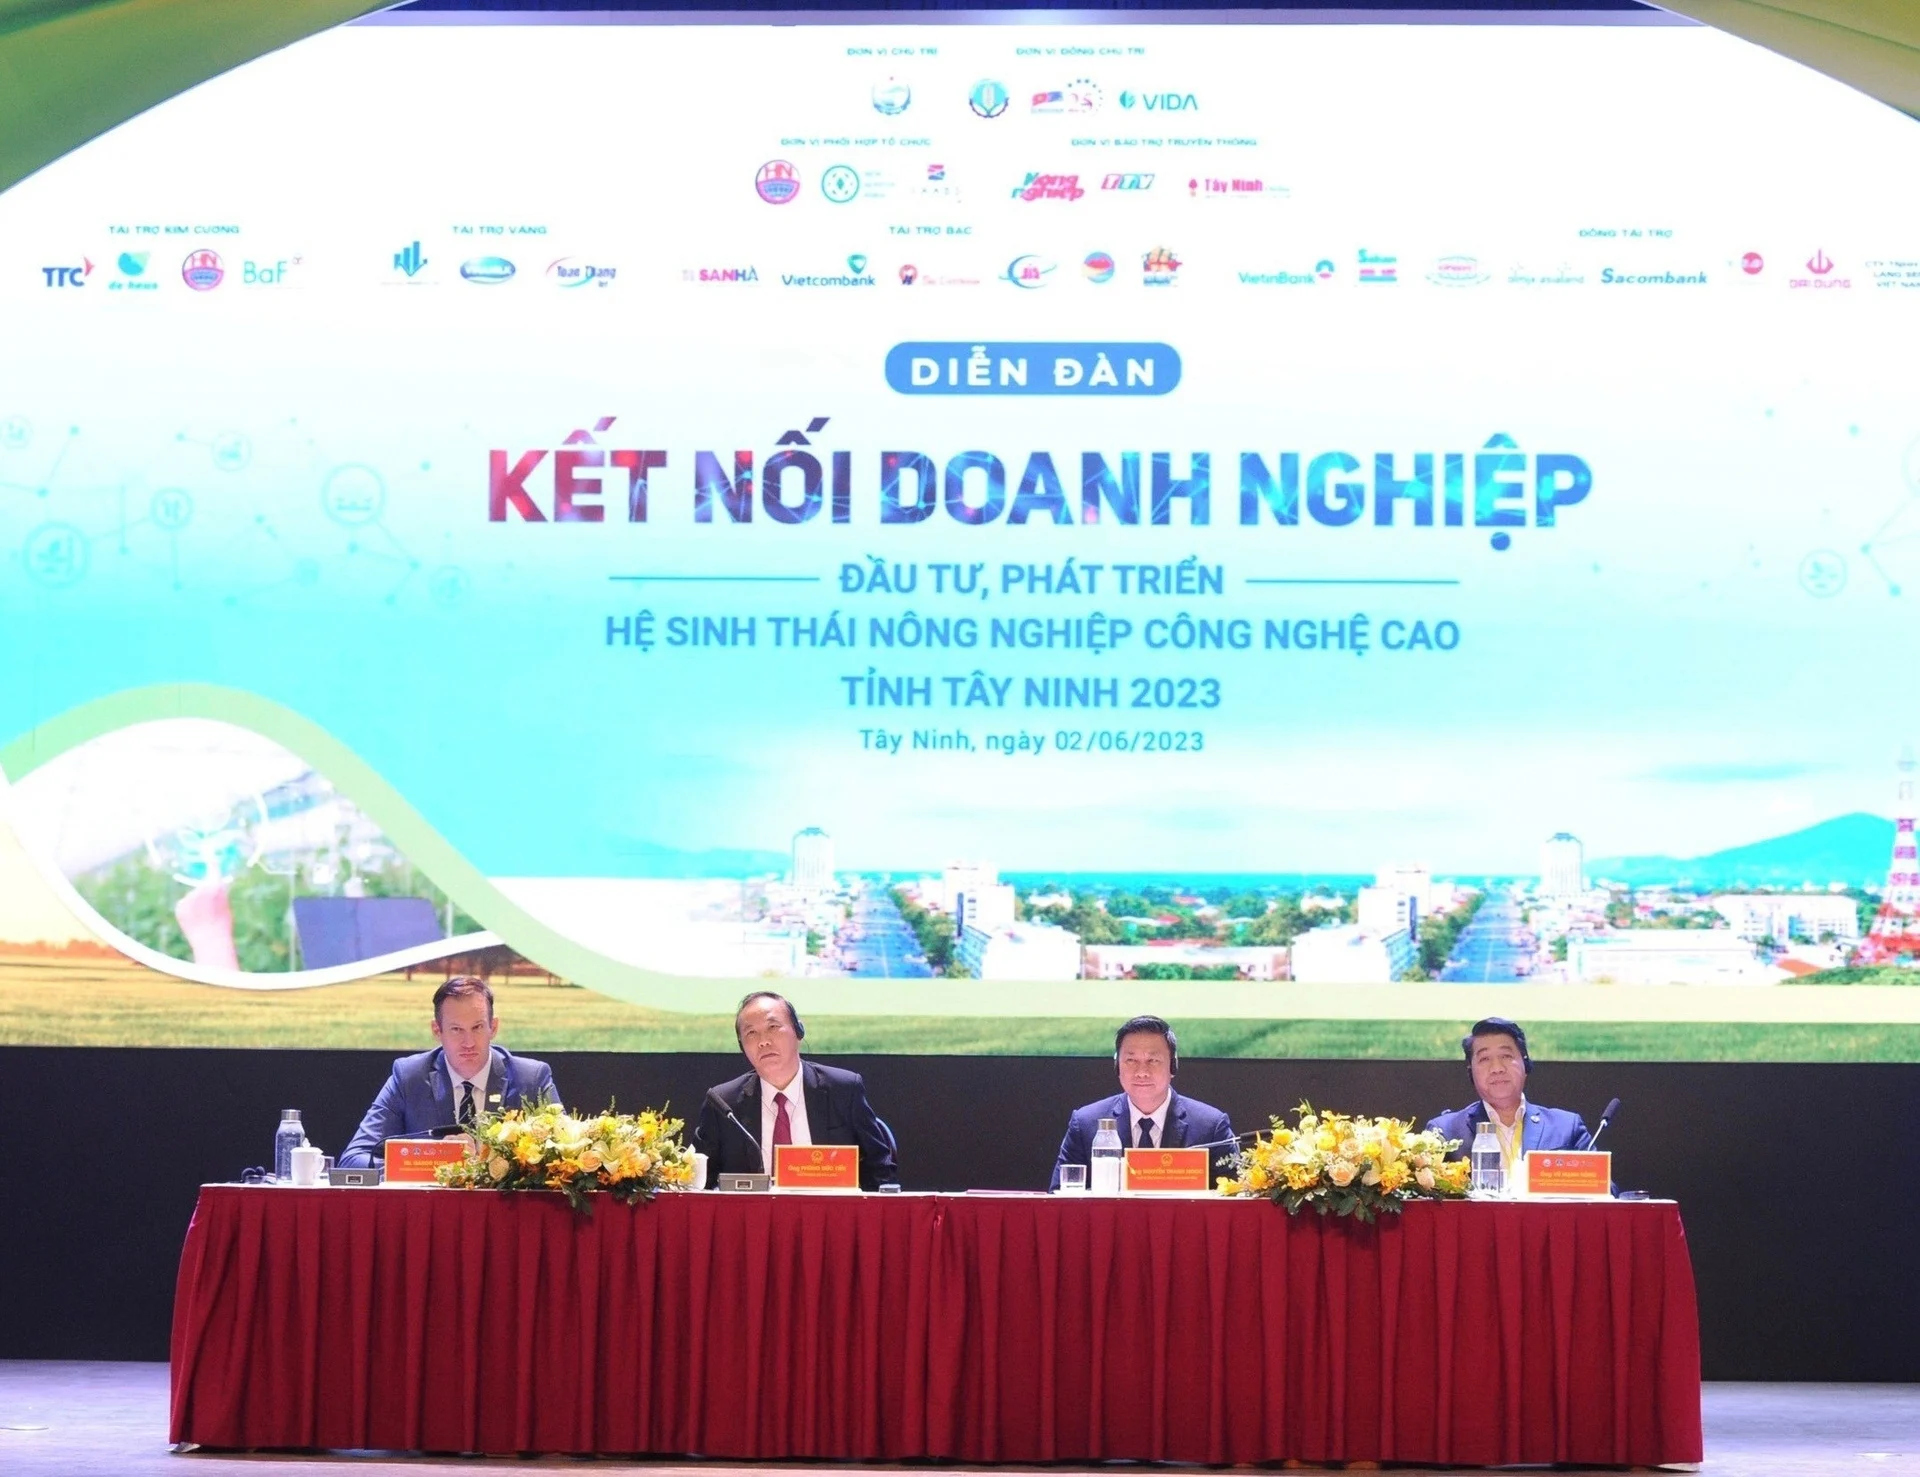 “Diễn đàn kết nối doanh nghiệp đầu tư, phát triển hệ sinh thái nông nghiệp công nghệ cao tỉnh Tây Ninh năm 2023”